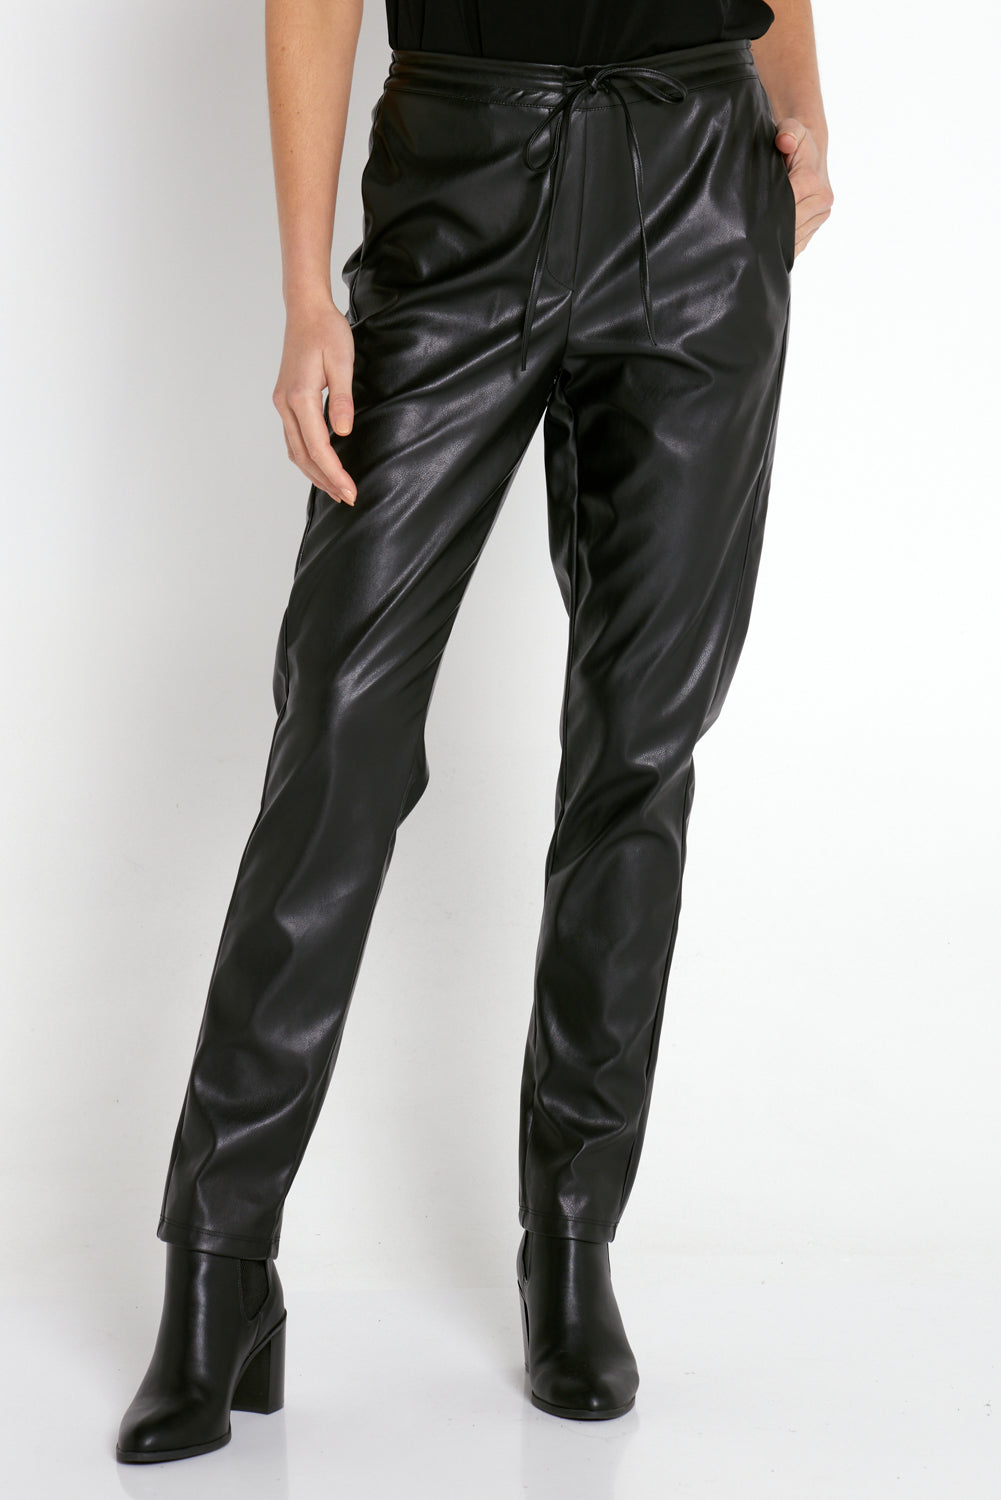 Vegan Leather Leisure Pants - Black